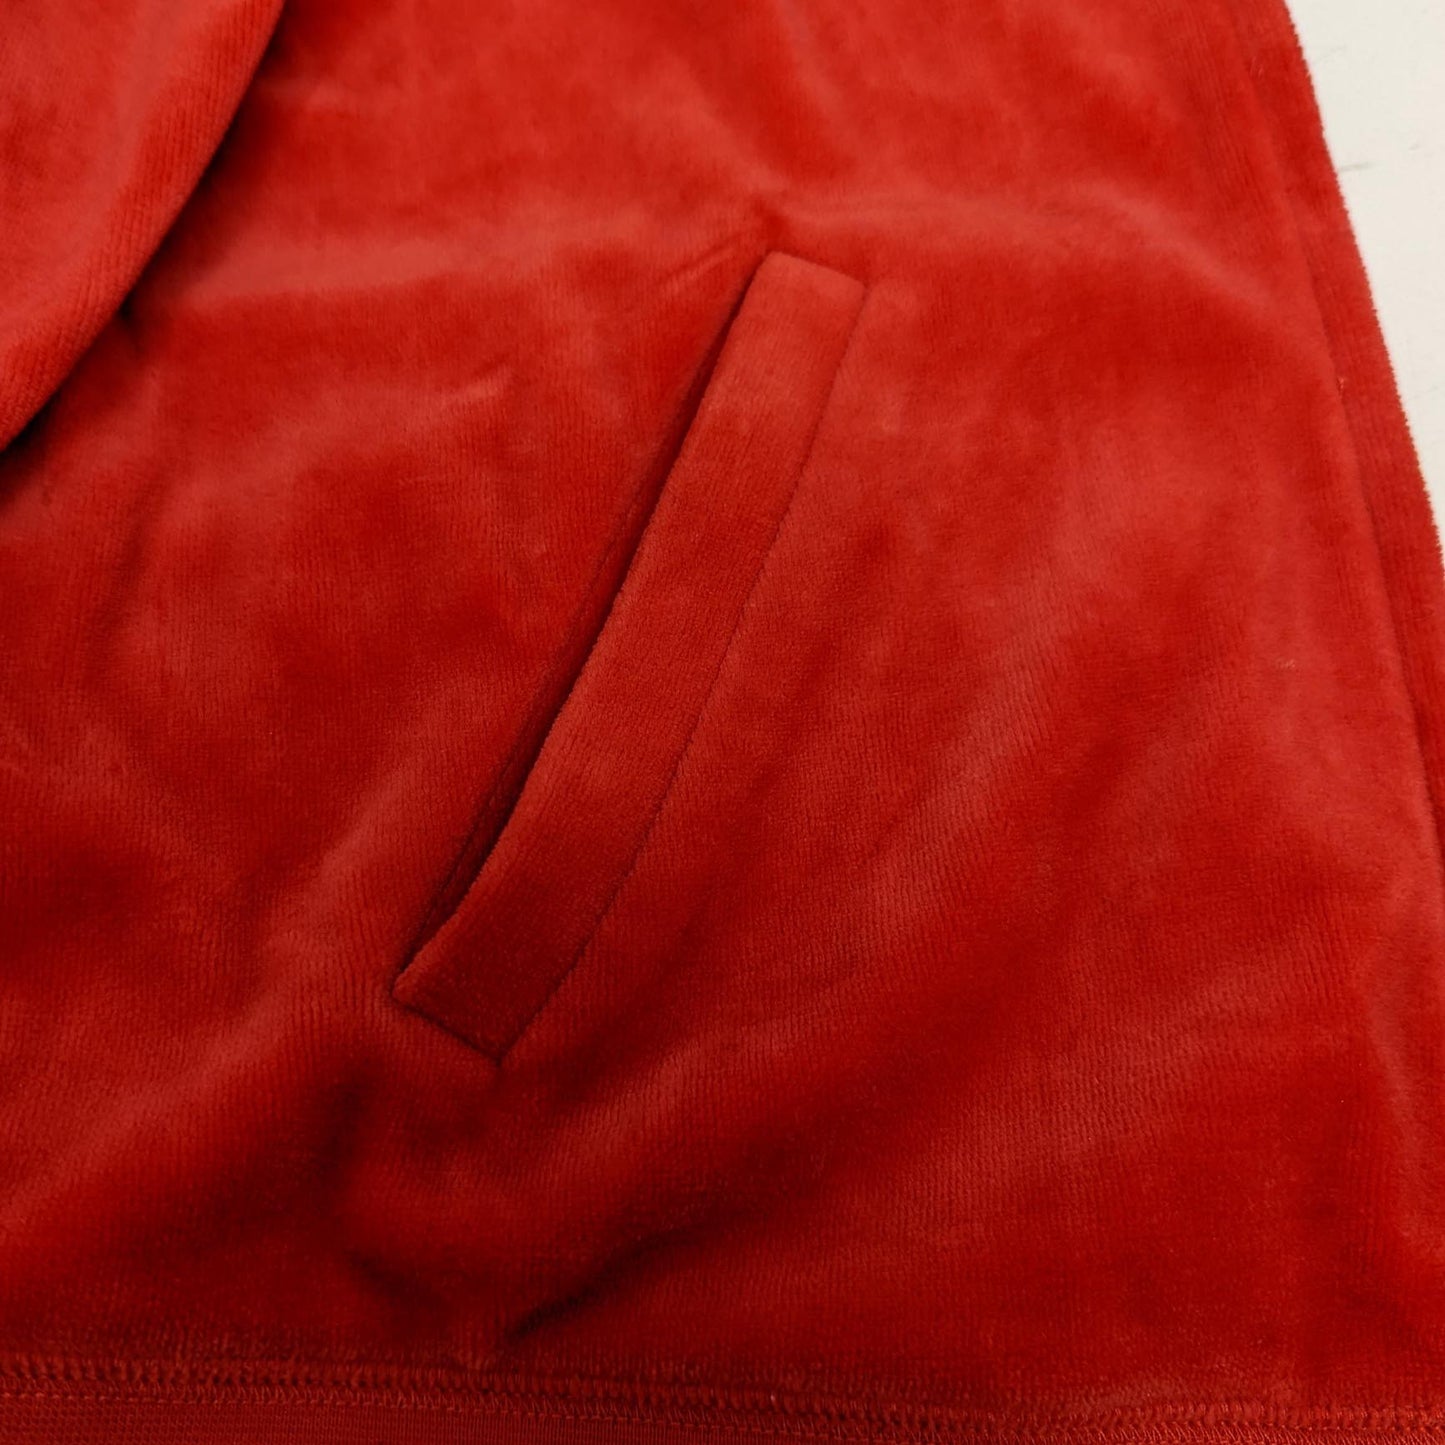 Juicy Velour Hoodie Red Zip Front Pockets Jacket Sweatshirt XL